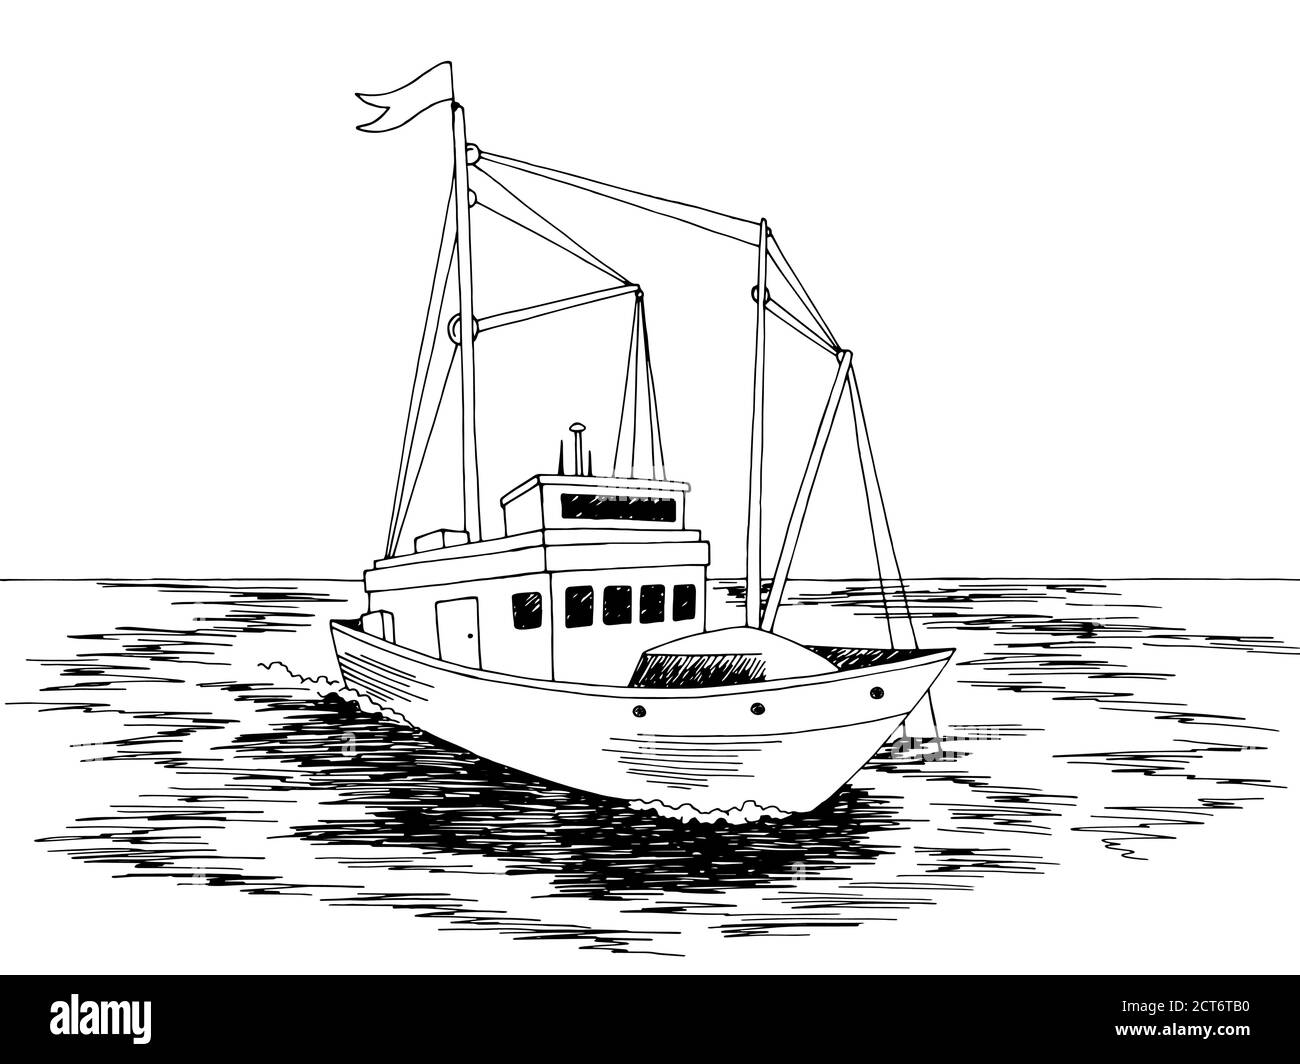 Fischerschiff Grafik schwarz weiß Meer Skizze Illustration Vektor Stock Vektor